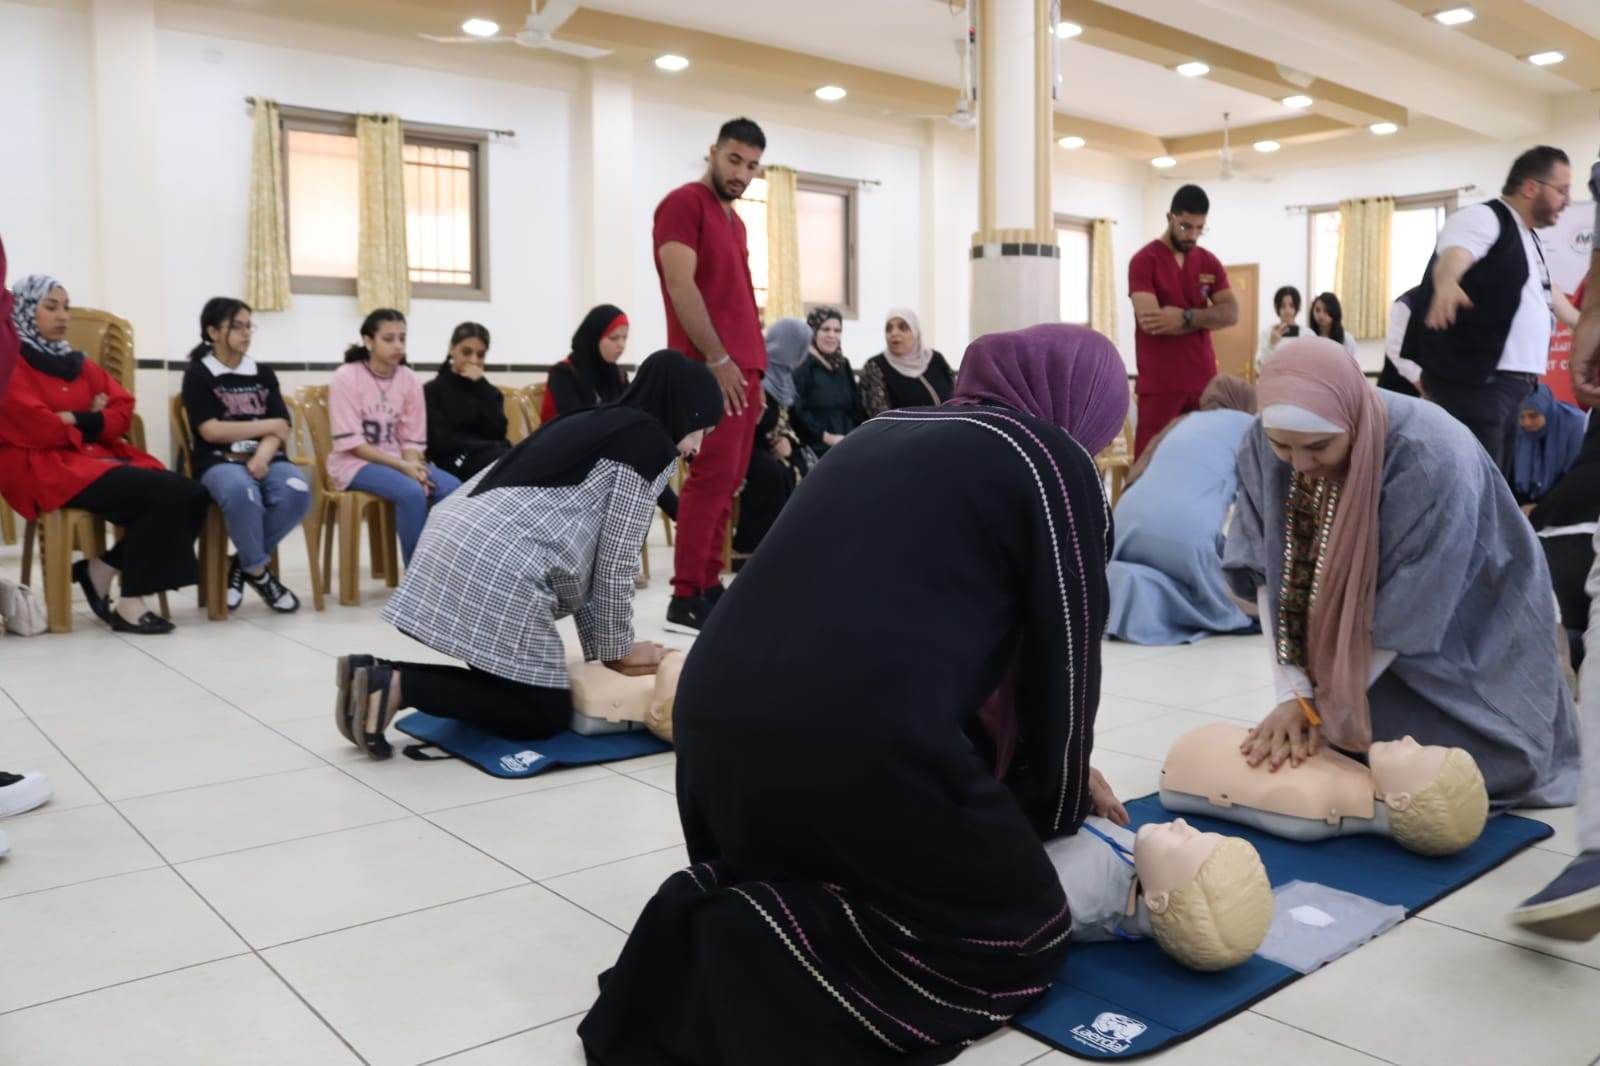 جمعية عسكر للتنمية والتطوير المجتمعي الخيرية تنظم دورة تدريبية بالشراكة مع مركز القلب التابع للجامعة العربية الأمريكية